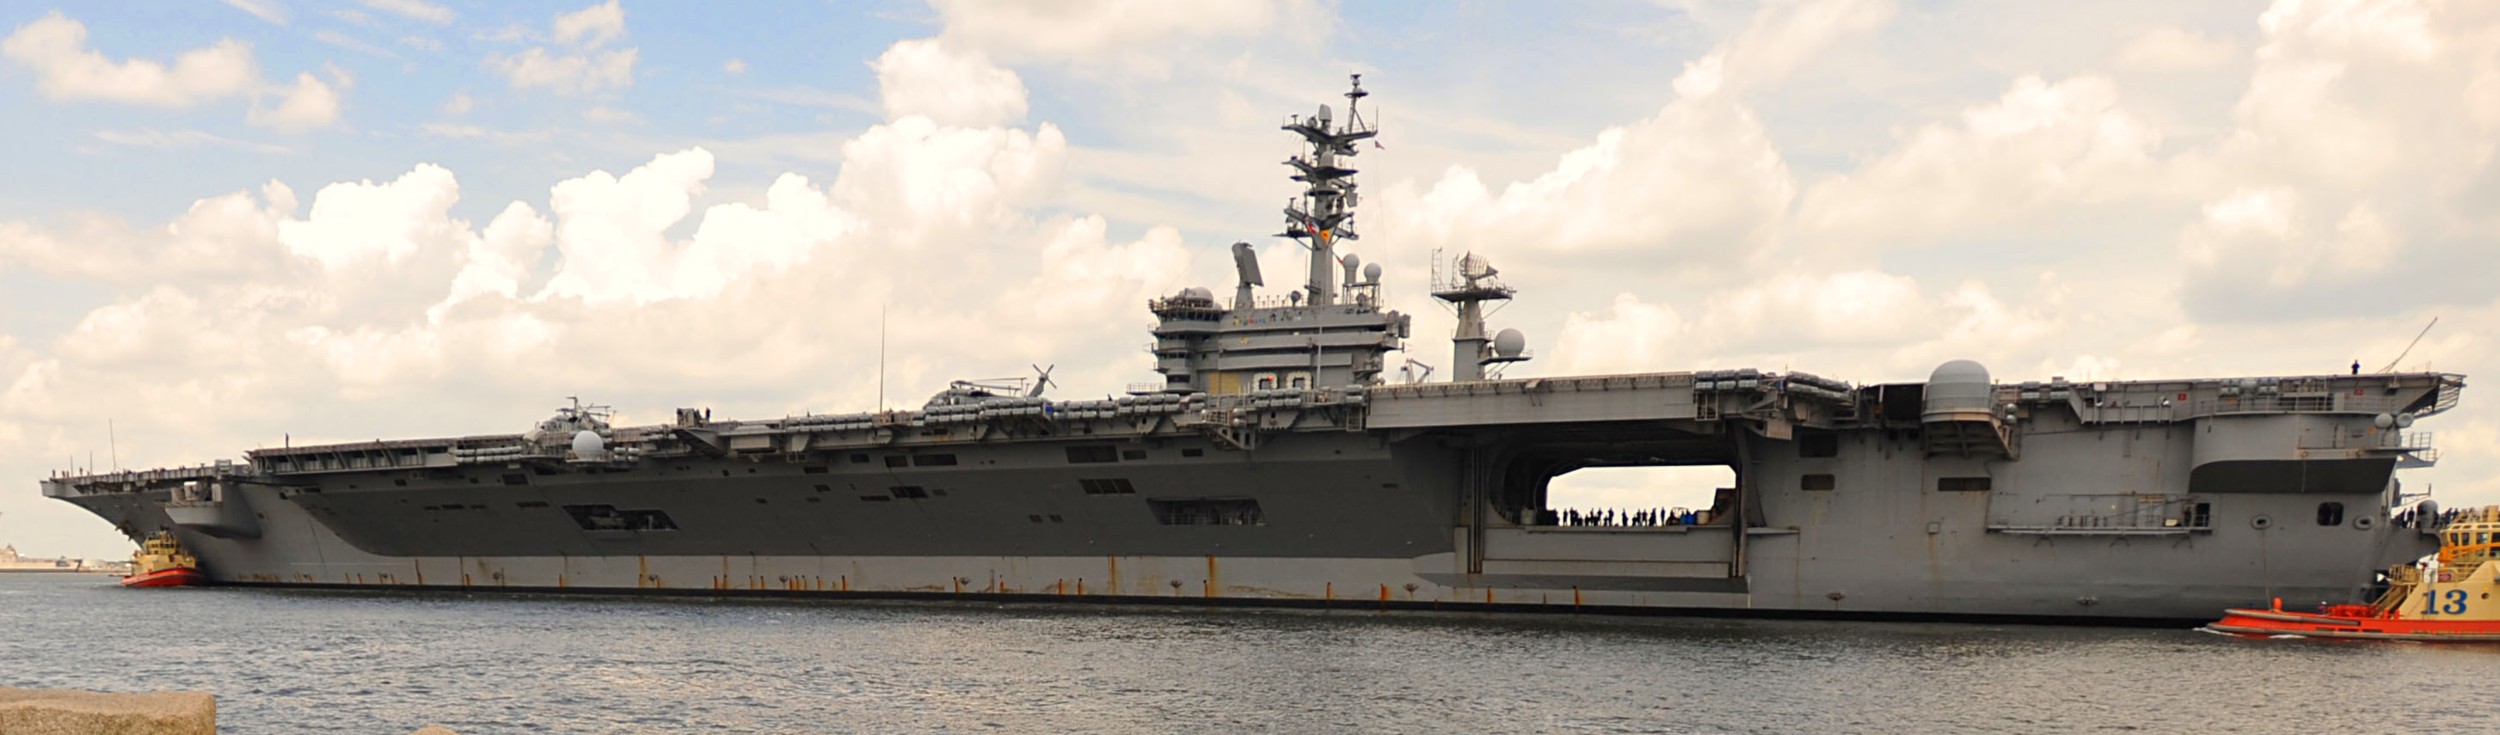 cvn-69 uss dwight d. eisenhower aircraft carrier us navy mayport florida 403